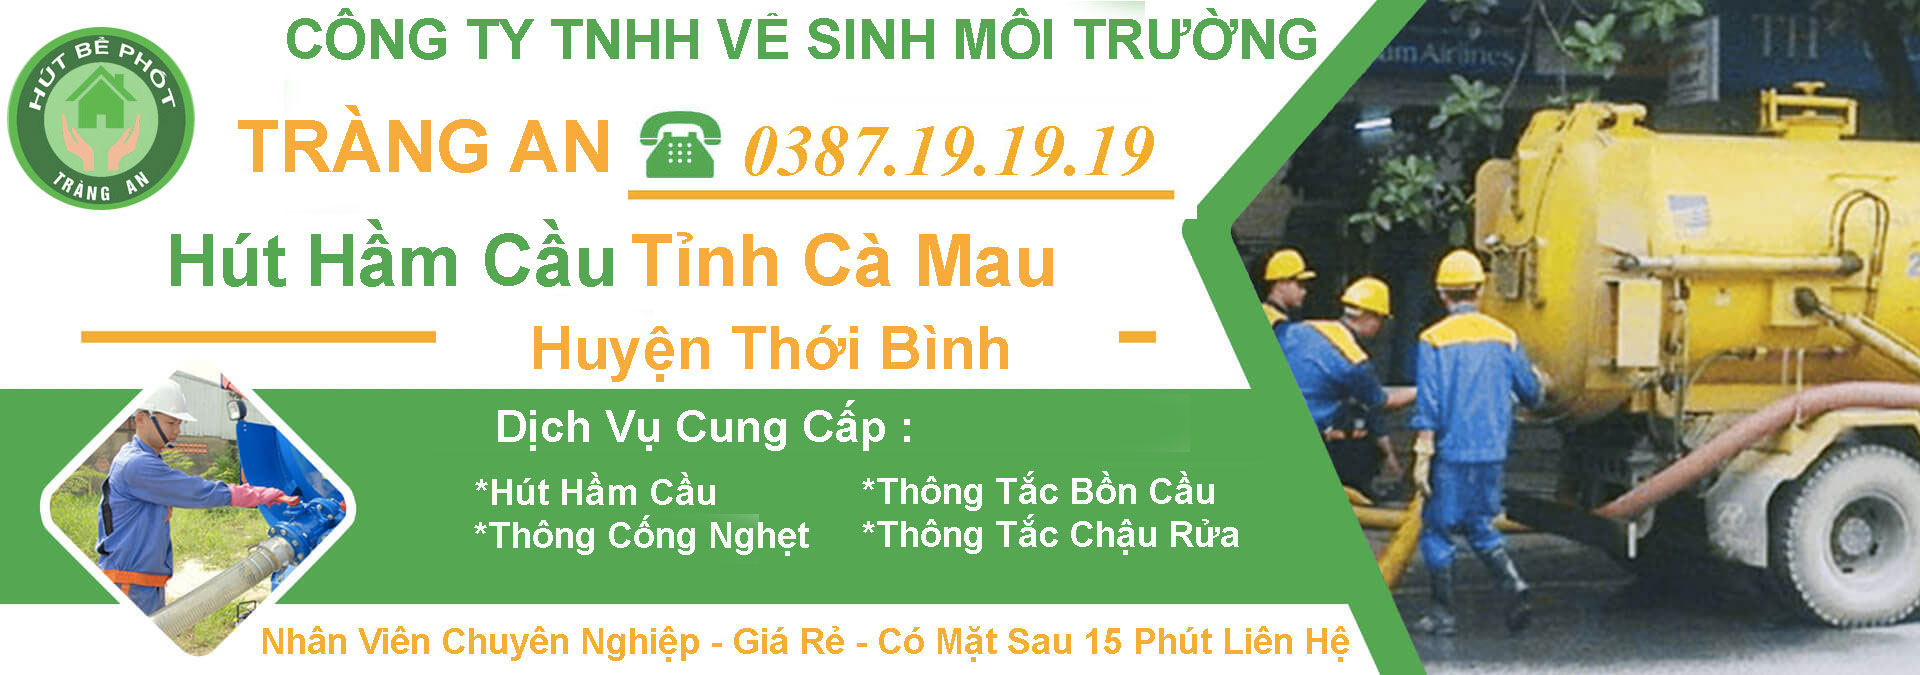 Hut Ham Cau Ca Mau Thoi Binh